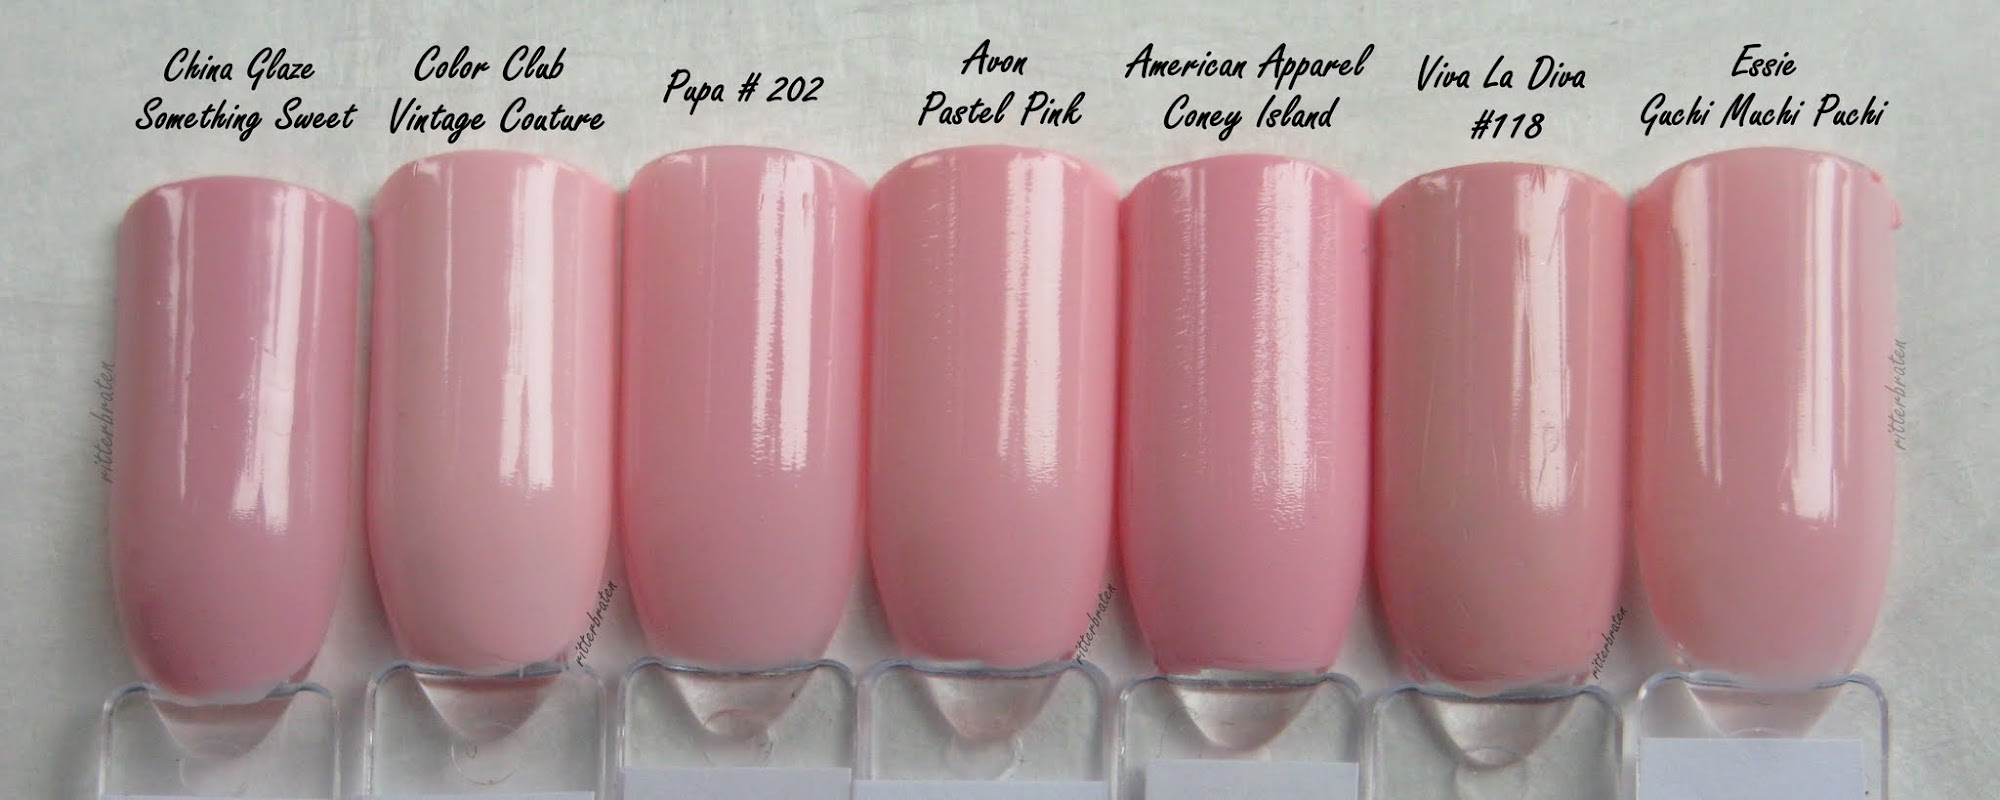 pastel pink comparison